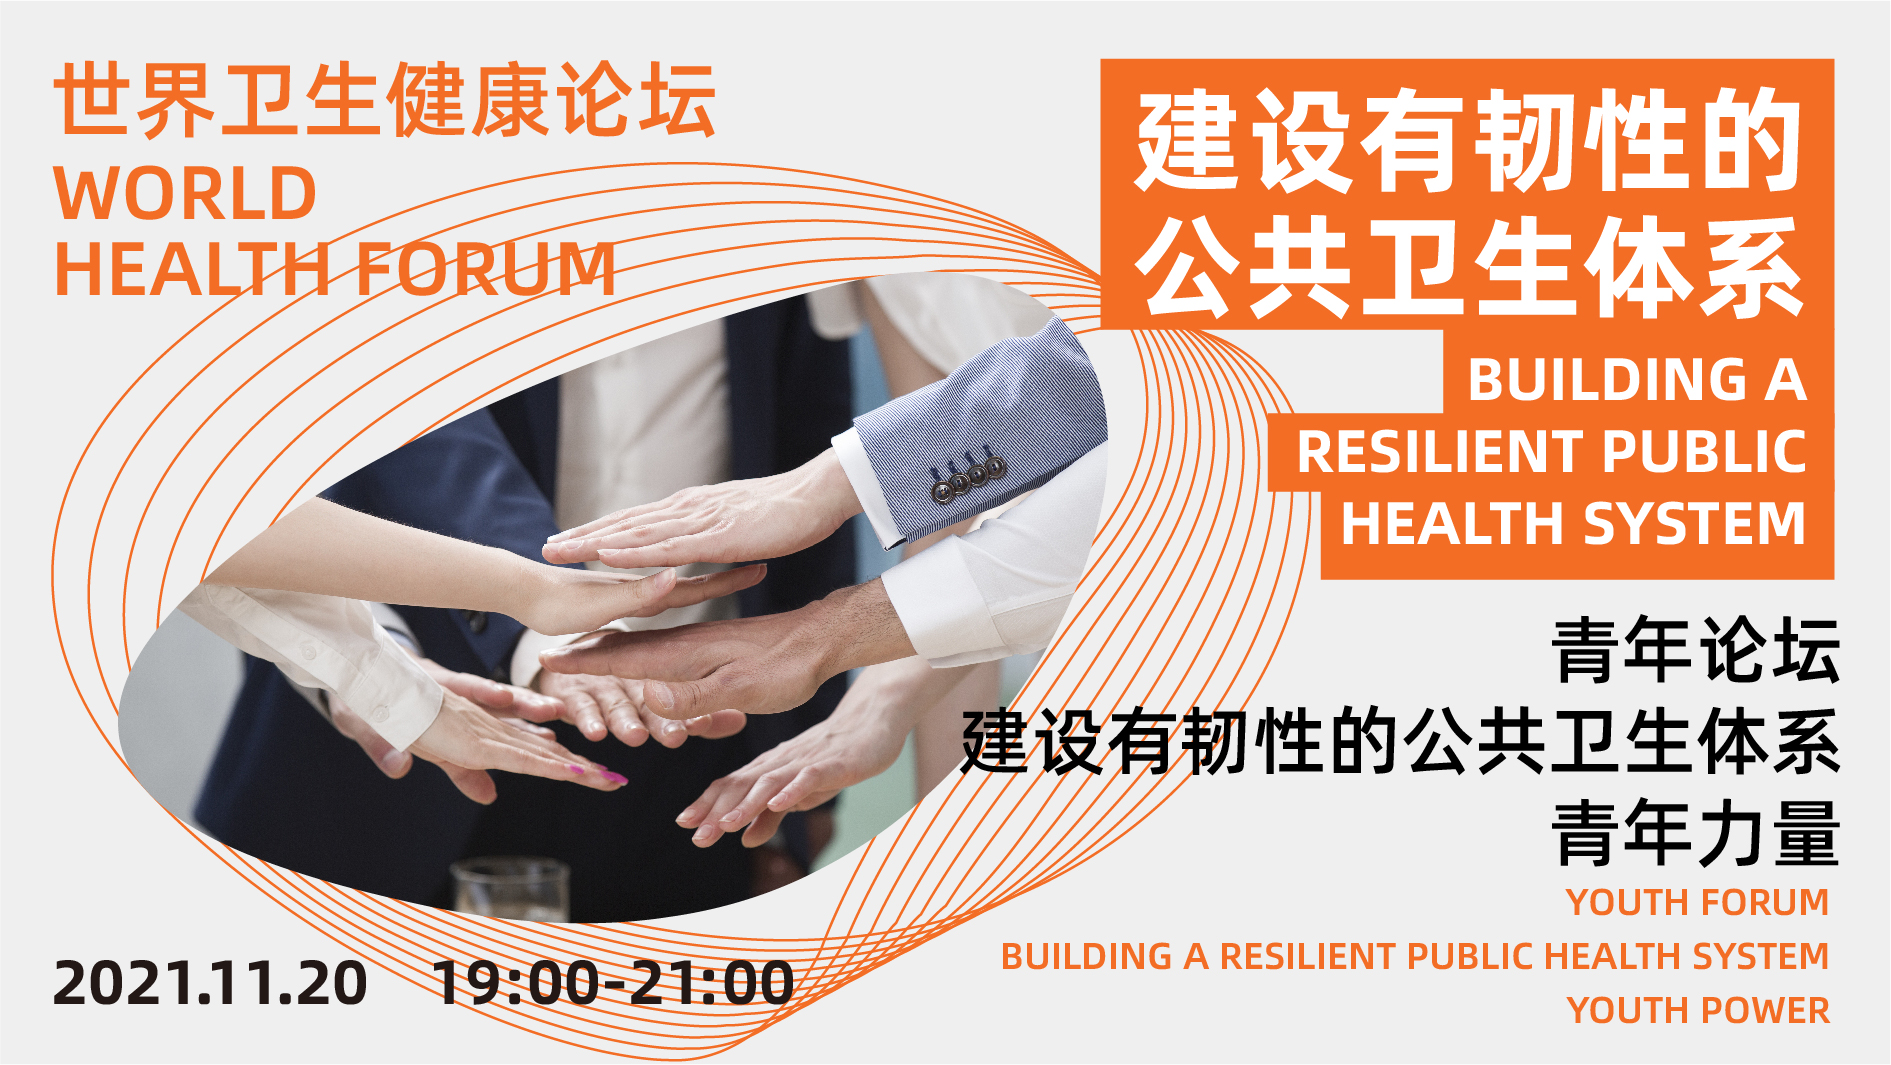 World Health Forum